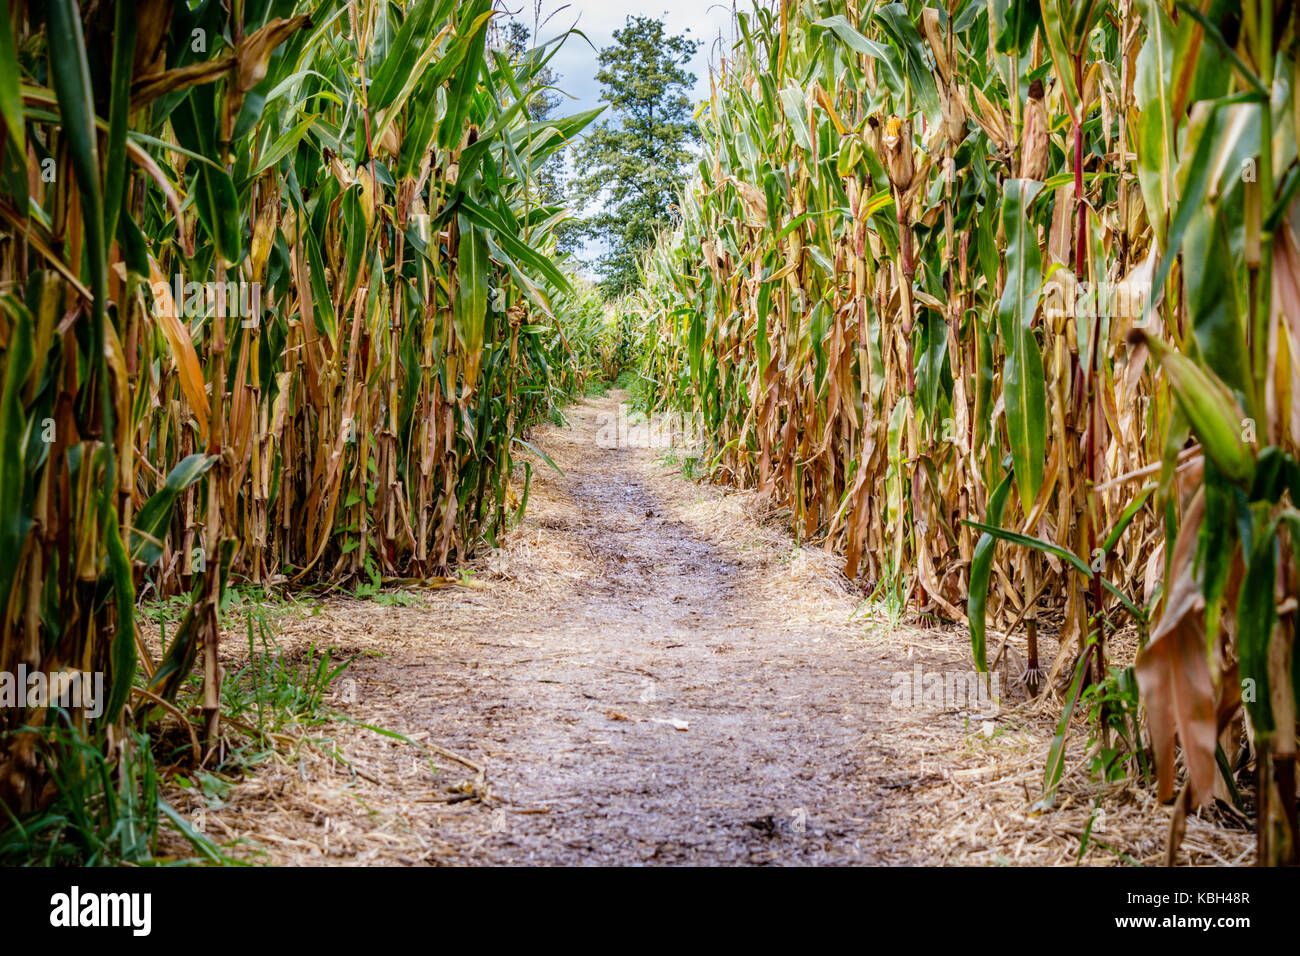 Un labirinto di mais o granturco labirinto è un labirinto tagliare al di fuori di un campo di mais. Il primo labirinto di mais è stata in annville, Pennsylvania. dedali di grano sono diventati popolari mete Foto Stock